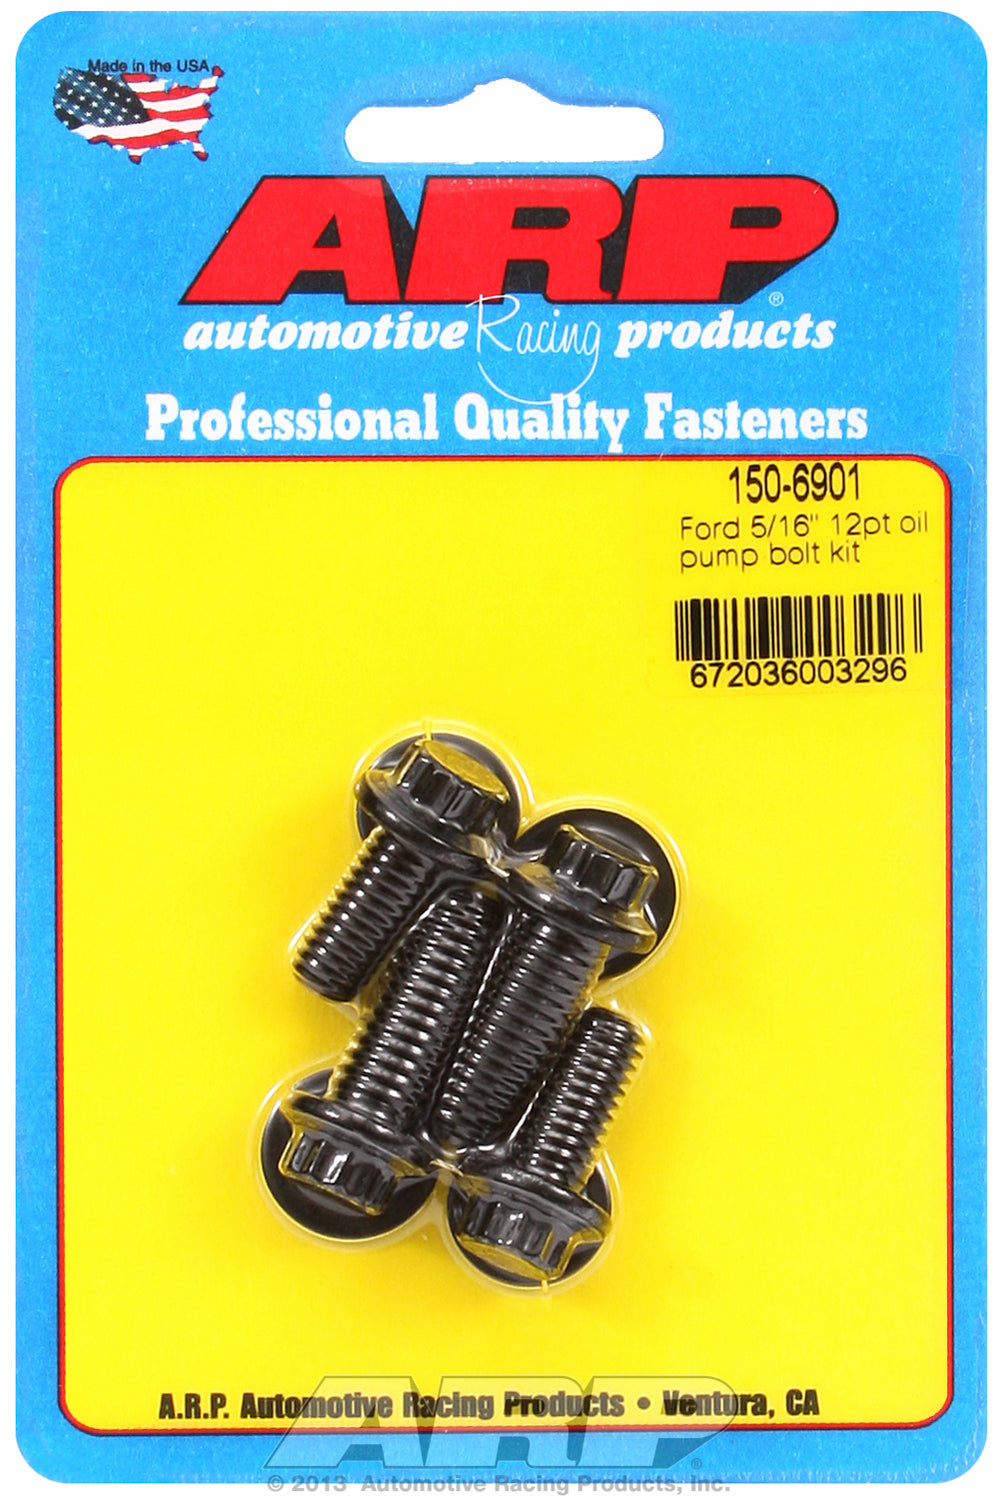 Oil Pump Bolt Kit for Ford 3/8˝ & 5/16˝ 4 piece bolt kit Black Oxide - 12-Pt Head